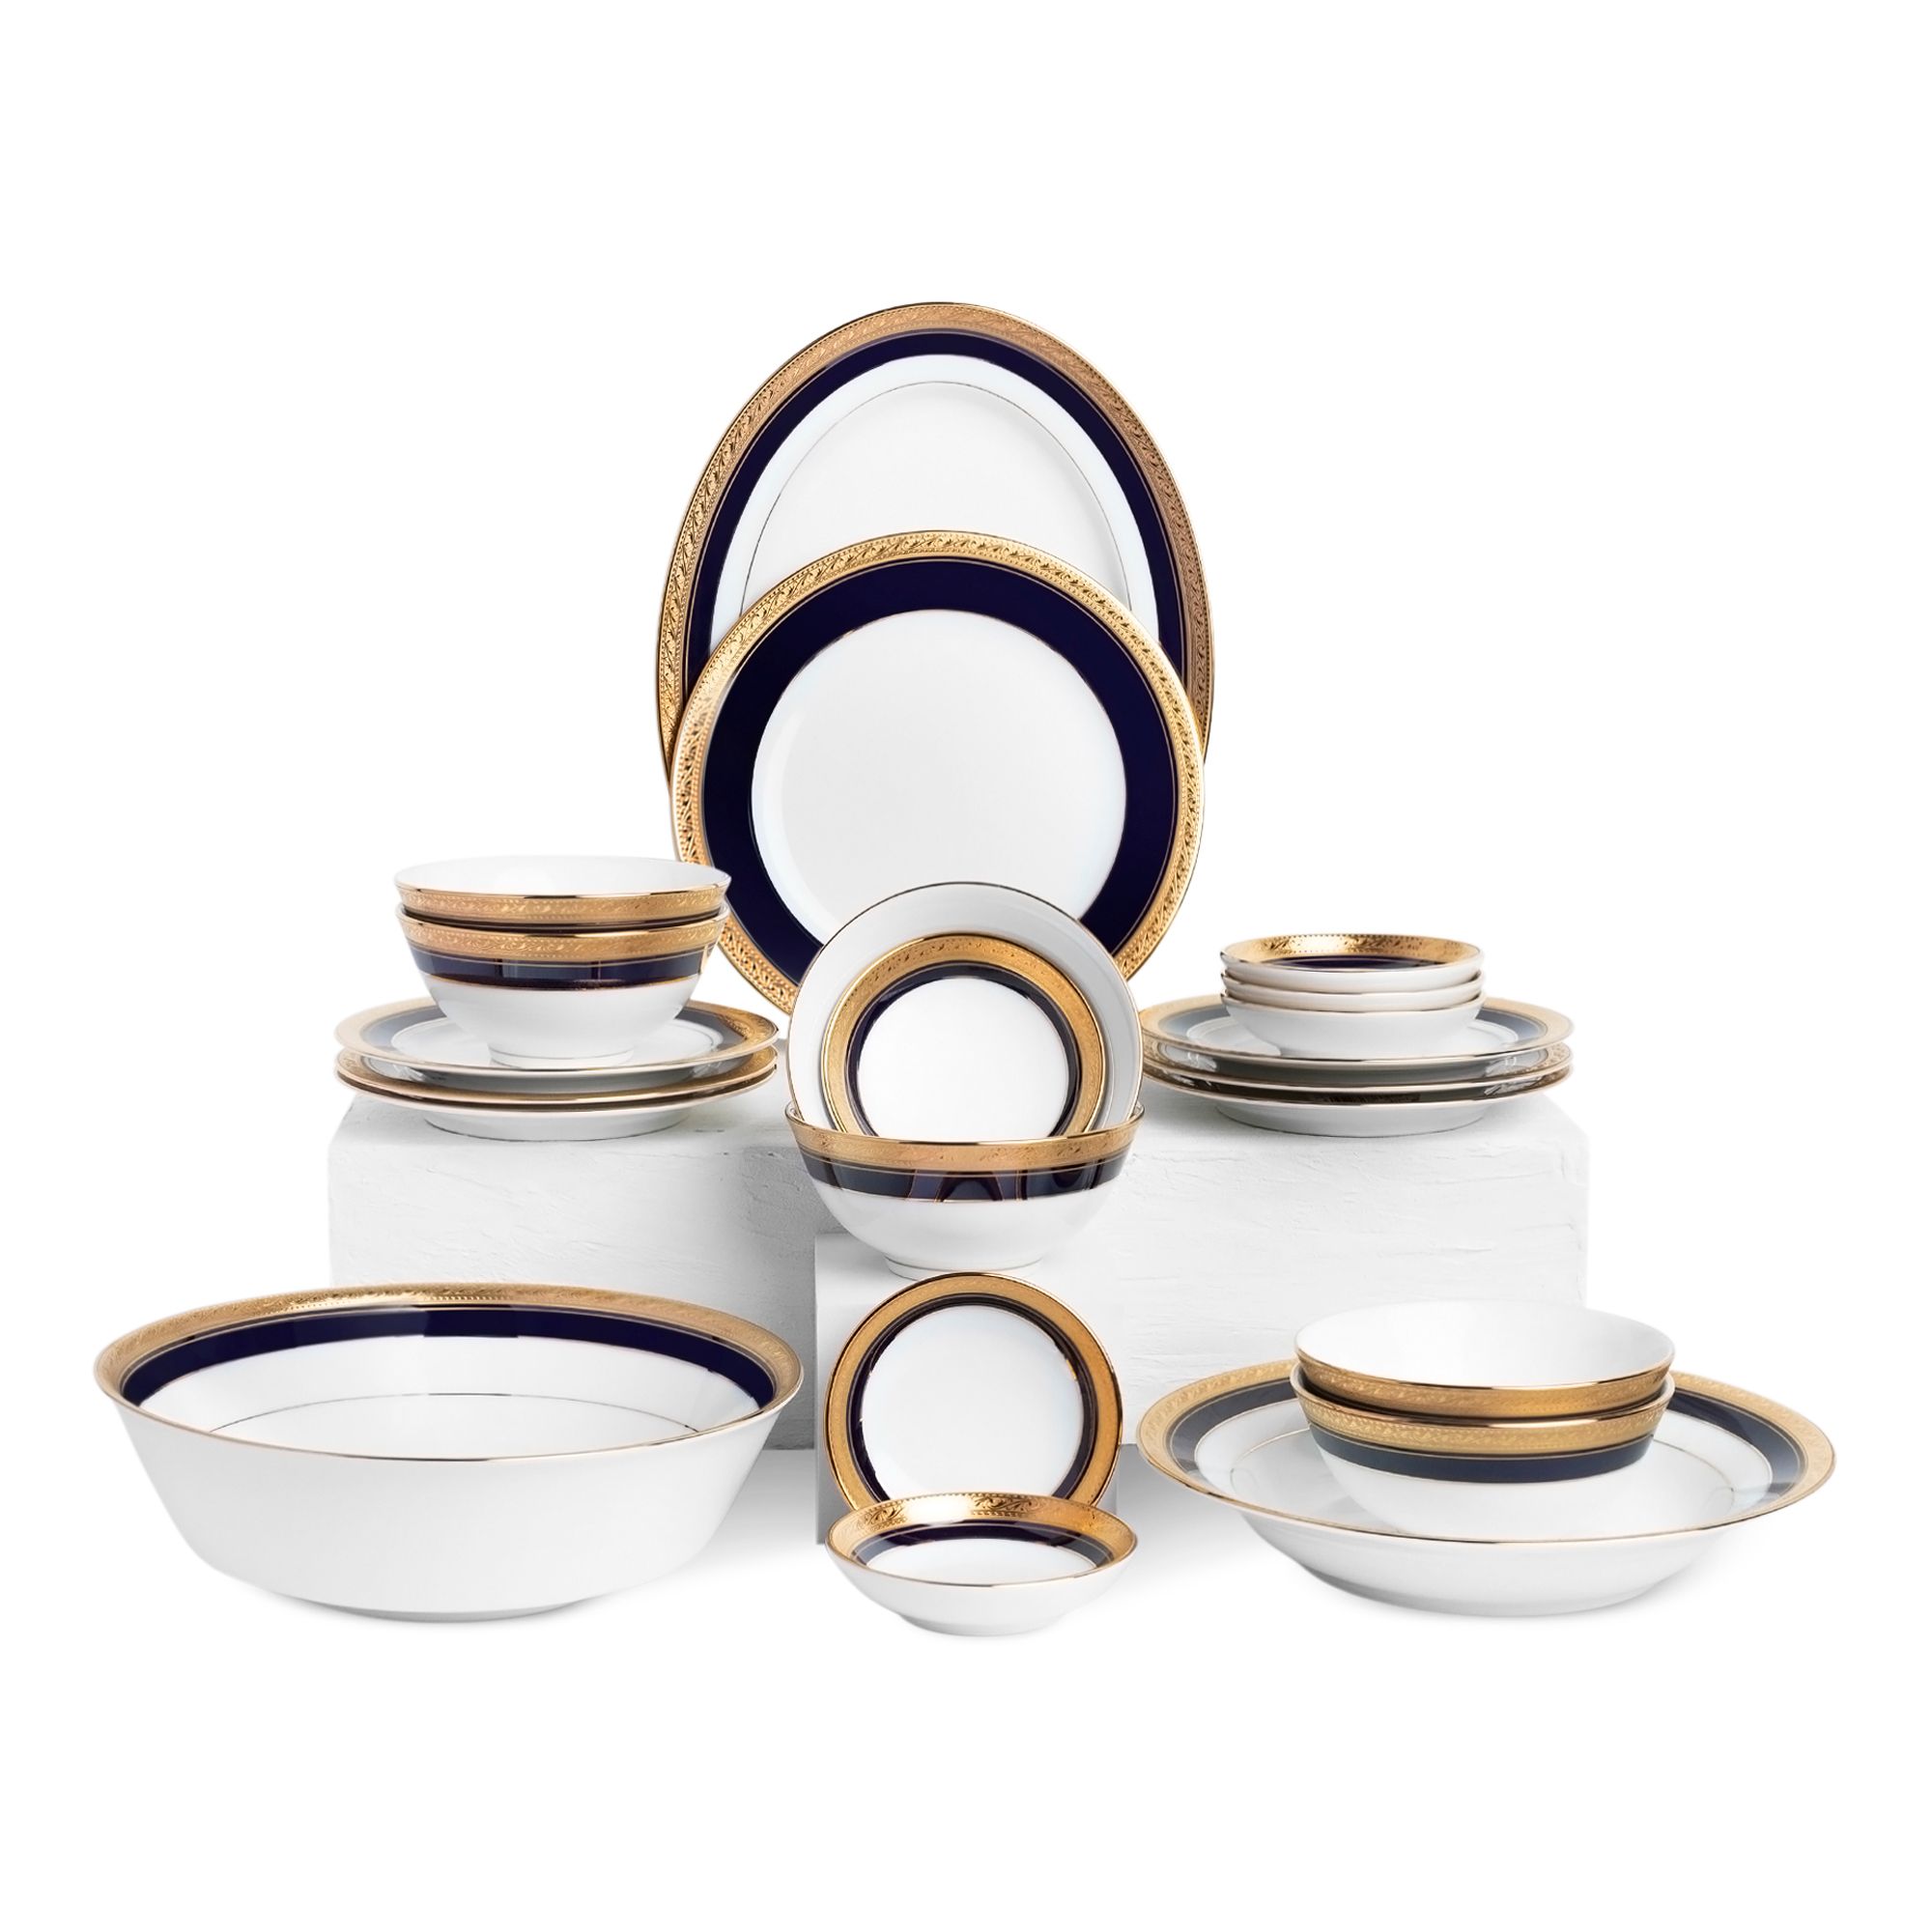  Bộ bát đĩa ăn Châu Á cơ bản 22 món sứ trắng | Crestwood Cobalt Gold 4171L 